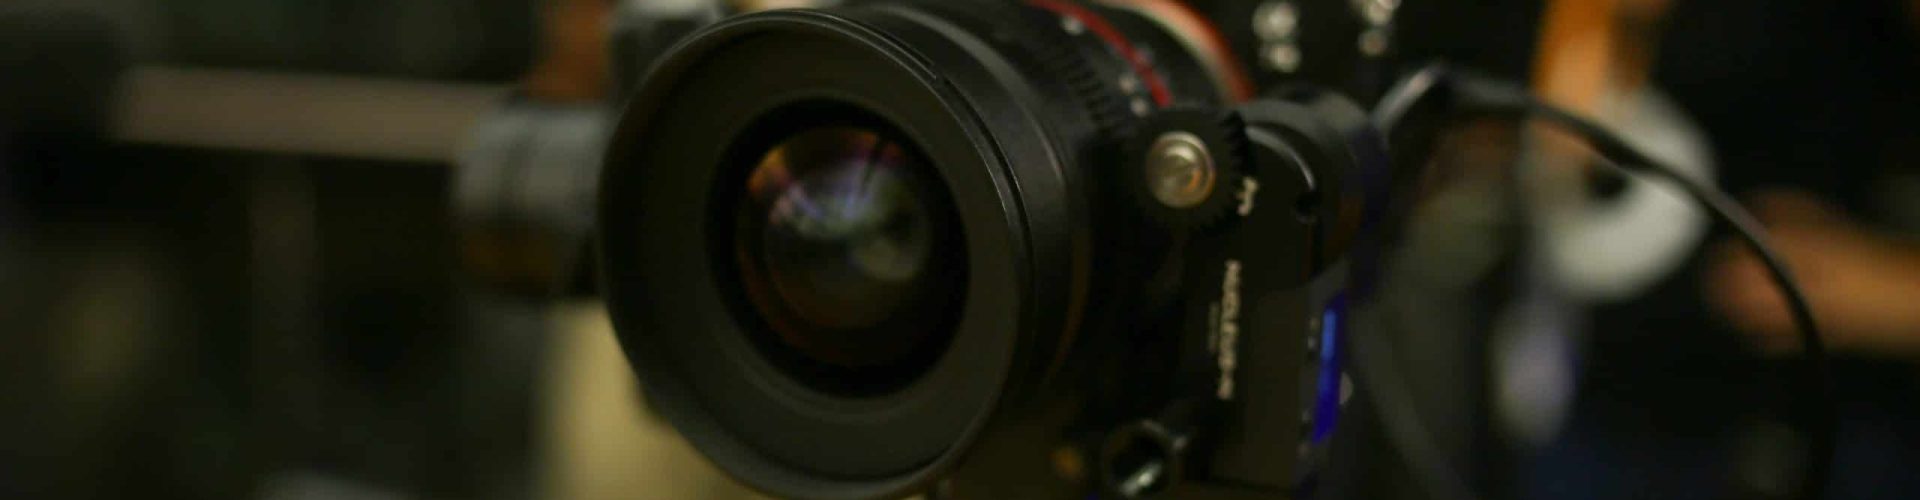 Razones por las cuales tener contenido en video para Pymes es necesario - Fósforo Cinema - Casa productora Monterrey - Servicio de video profesional